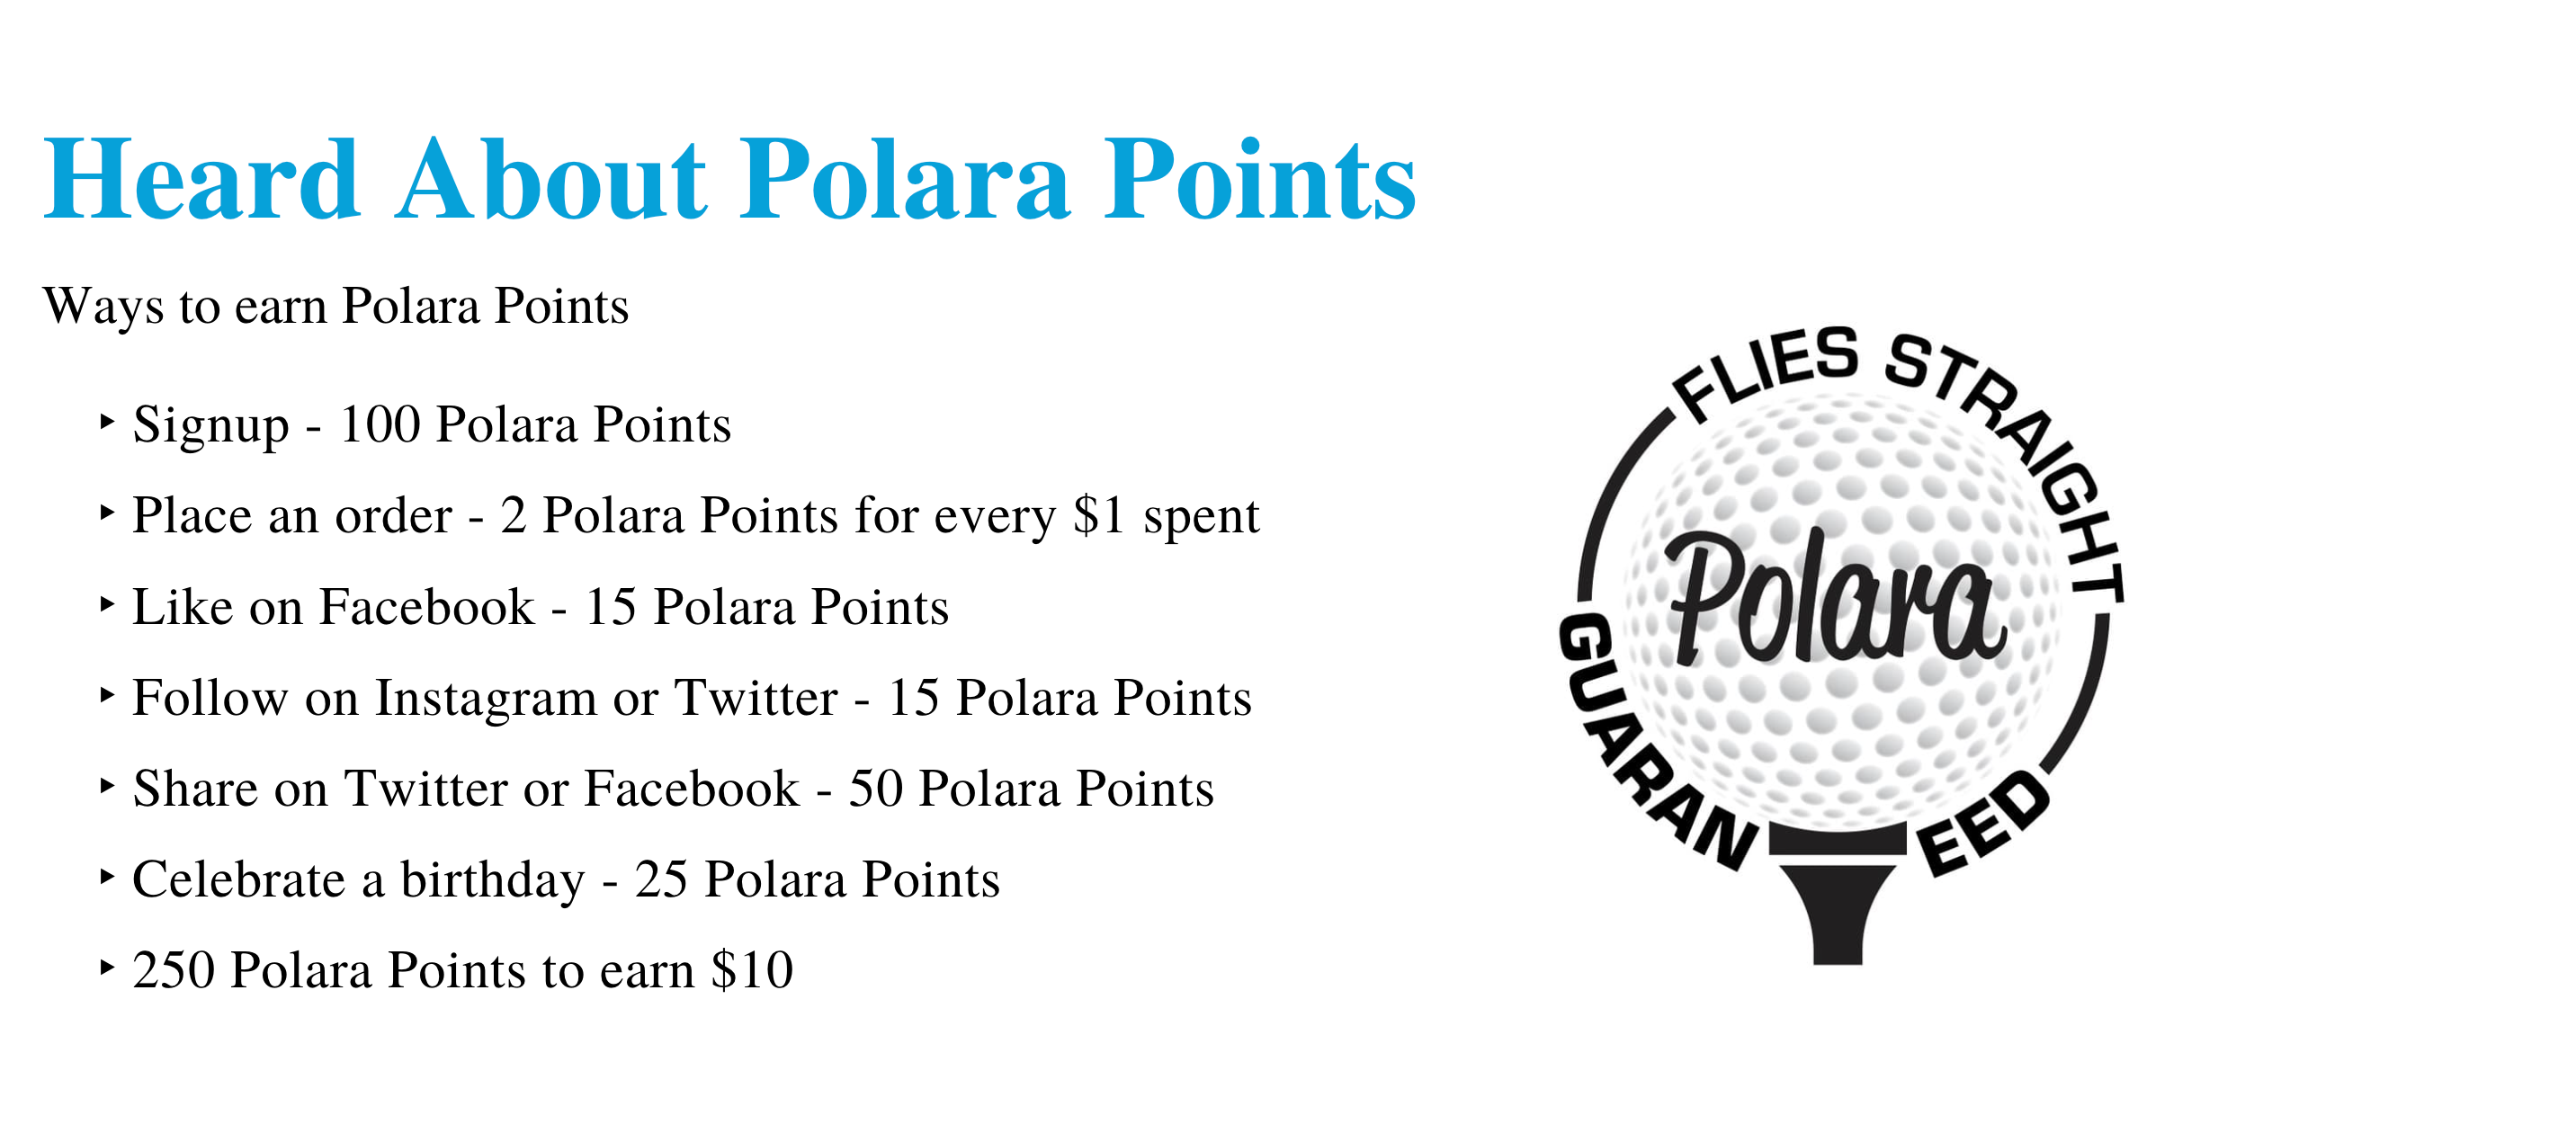 Polara's Spring Newsletter 2022